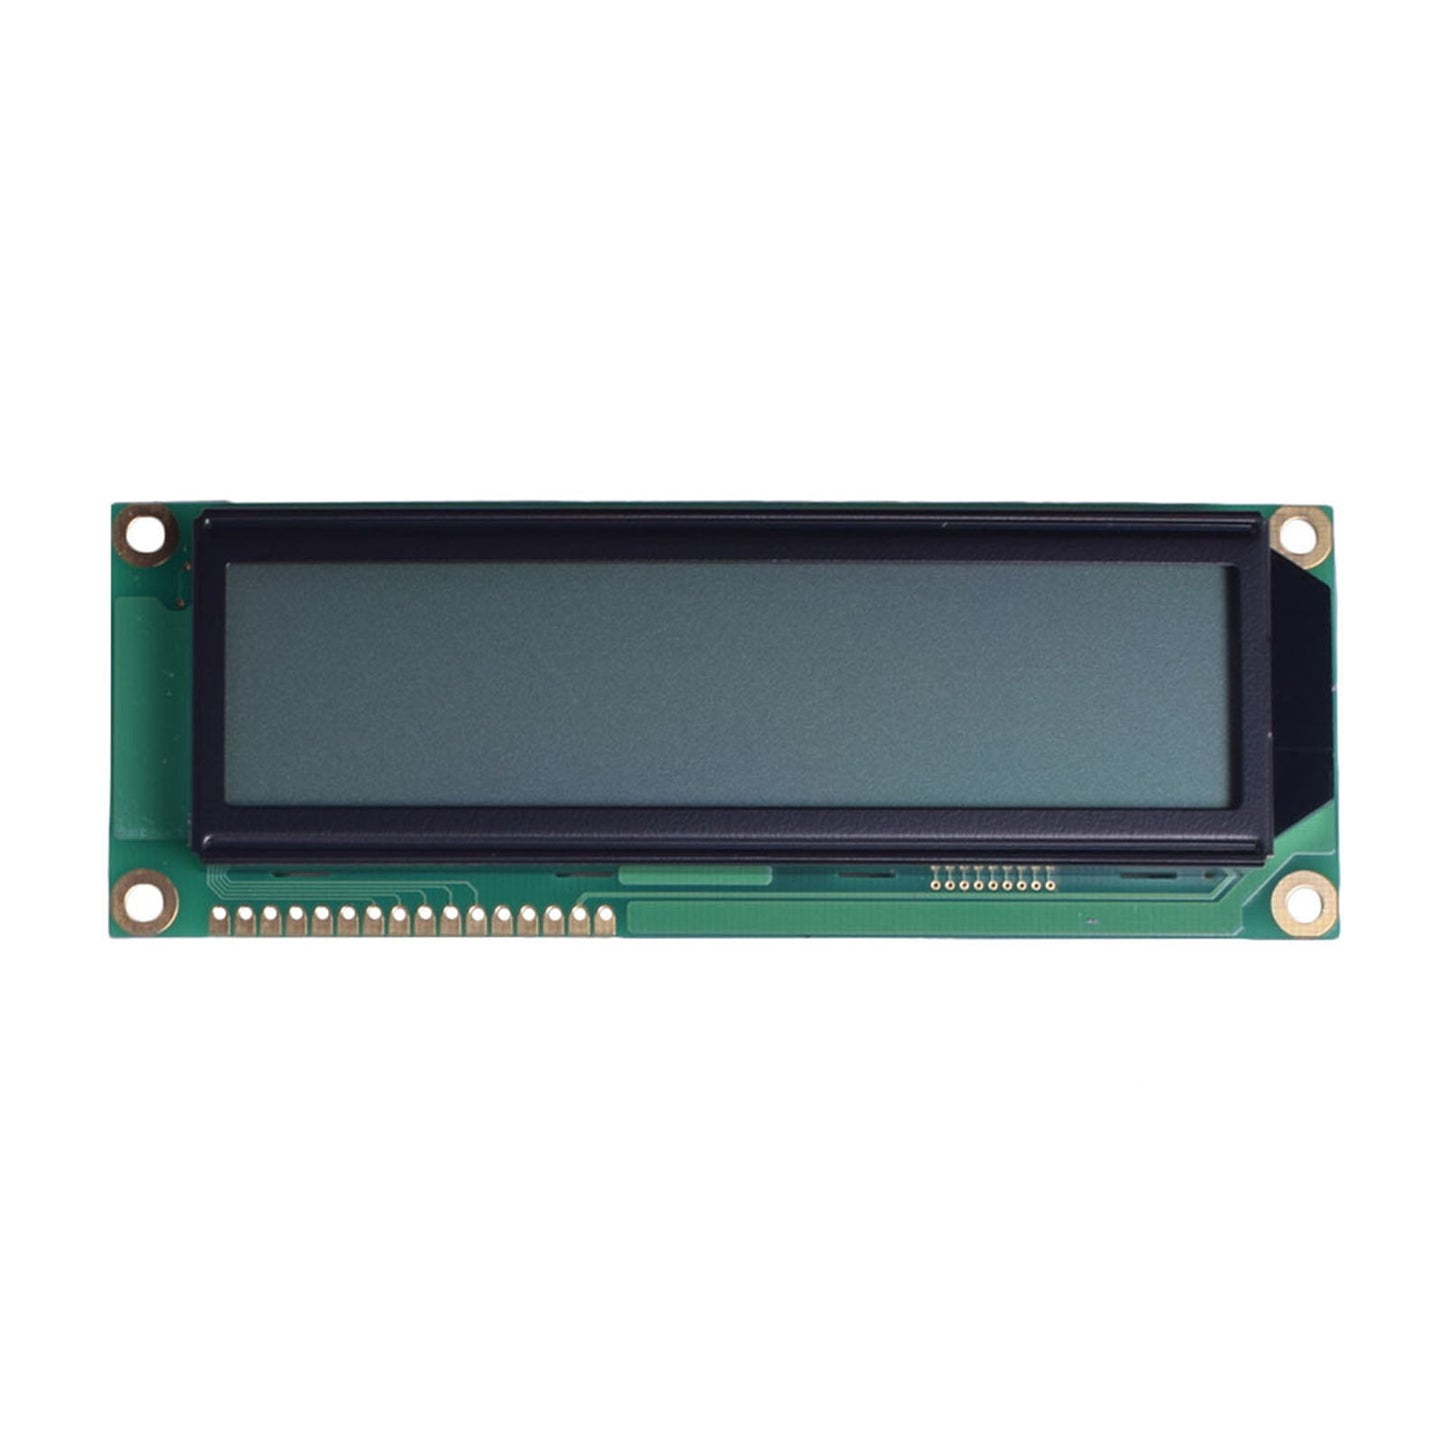 DisplayModule 16x2 Large Character LCD - MCU